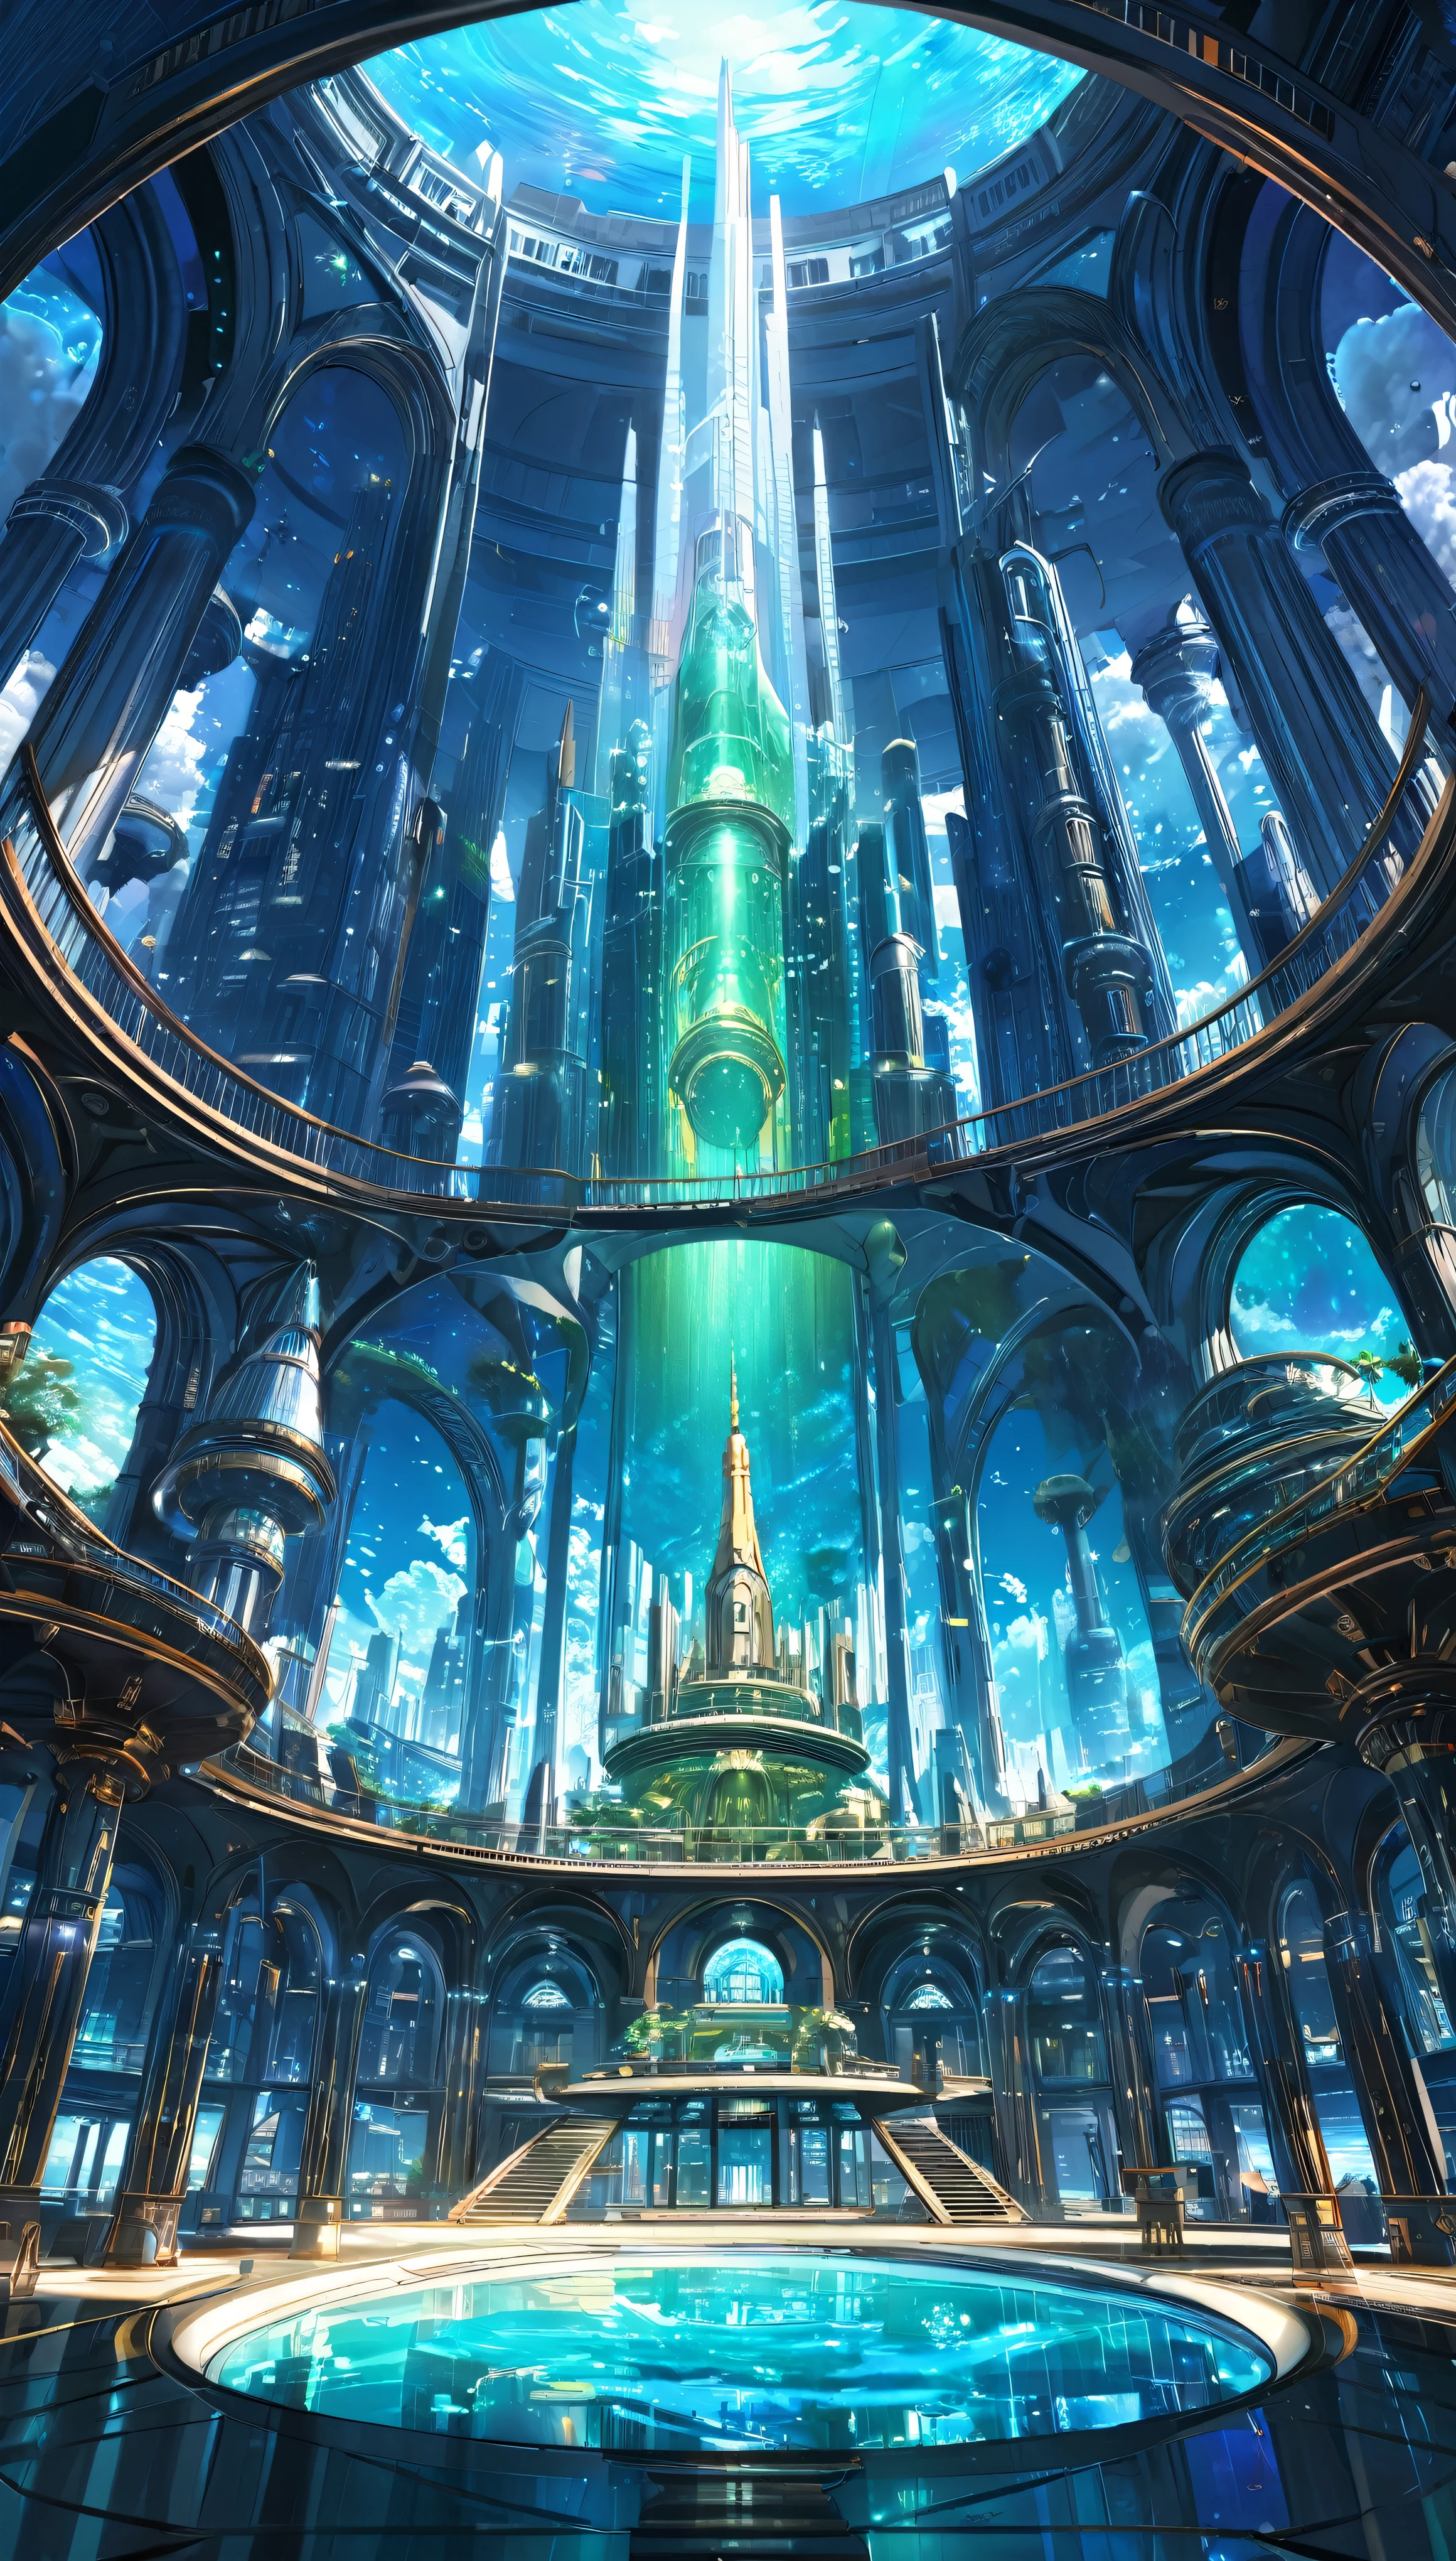 Atemberaubendes Ultra HD、16:9 Gemälde、Eingehüllt in den geheimnisvollen Glanz einer Science-Fiction-Kulisse、Enthüllt ein faszinierendes interdimensionales Fantasy-Reich, das an die verlorene Stadt Atlantis erinnert。Diese Zusammensetzung ist、Die bezaubernde Ästhetik von Studio Ghibli、Kombinieren Sie mühelos komplizierte Details und volumetrische Beleuchtung in der Unreal Engine、Erweckt ein Gefühl von Großartigkeit und Wunder。azure、Blau Grün、Die dreifarbige Dreiklangfarbe harmoniert mit den schillernden Perlen.、Beleuchtung der lebendigen Unterwasser-Stadtlandschaft, die sich über den Meeresboden erstreckt。Der majestätische Turm und die hoch aufragende Kuppel、